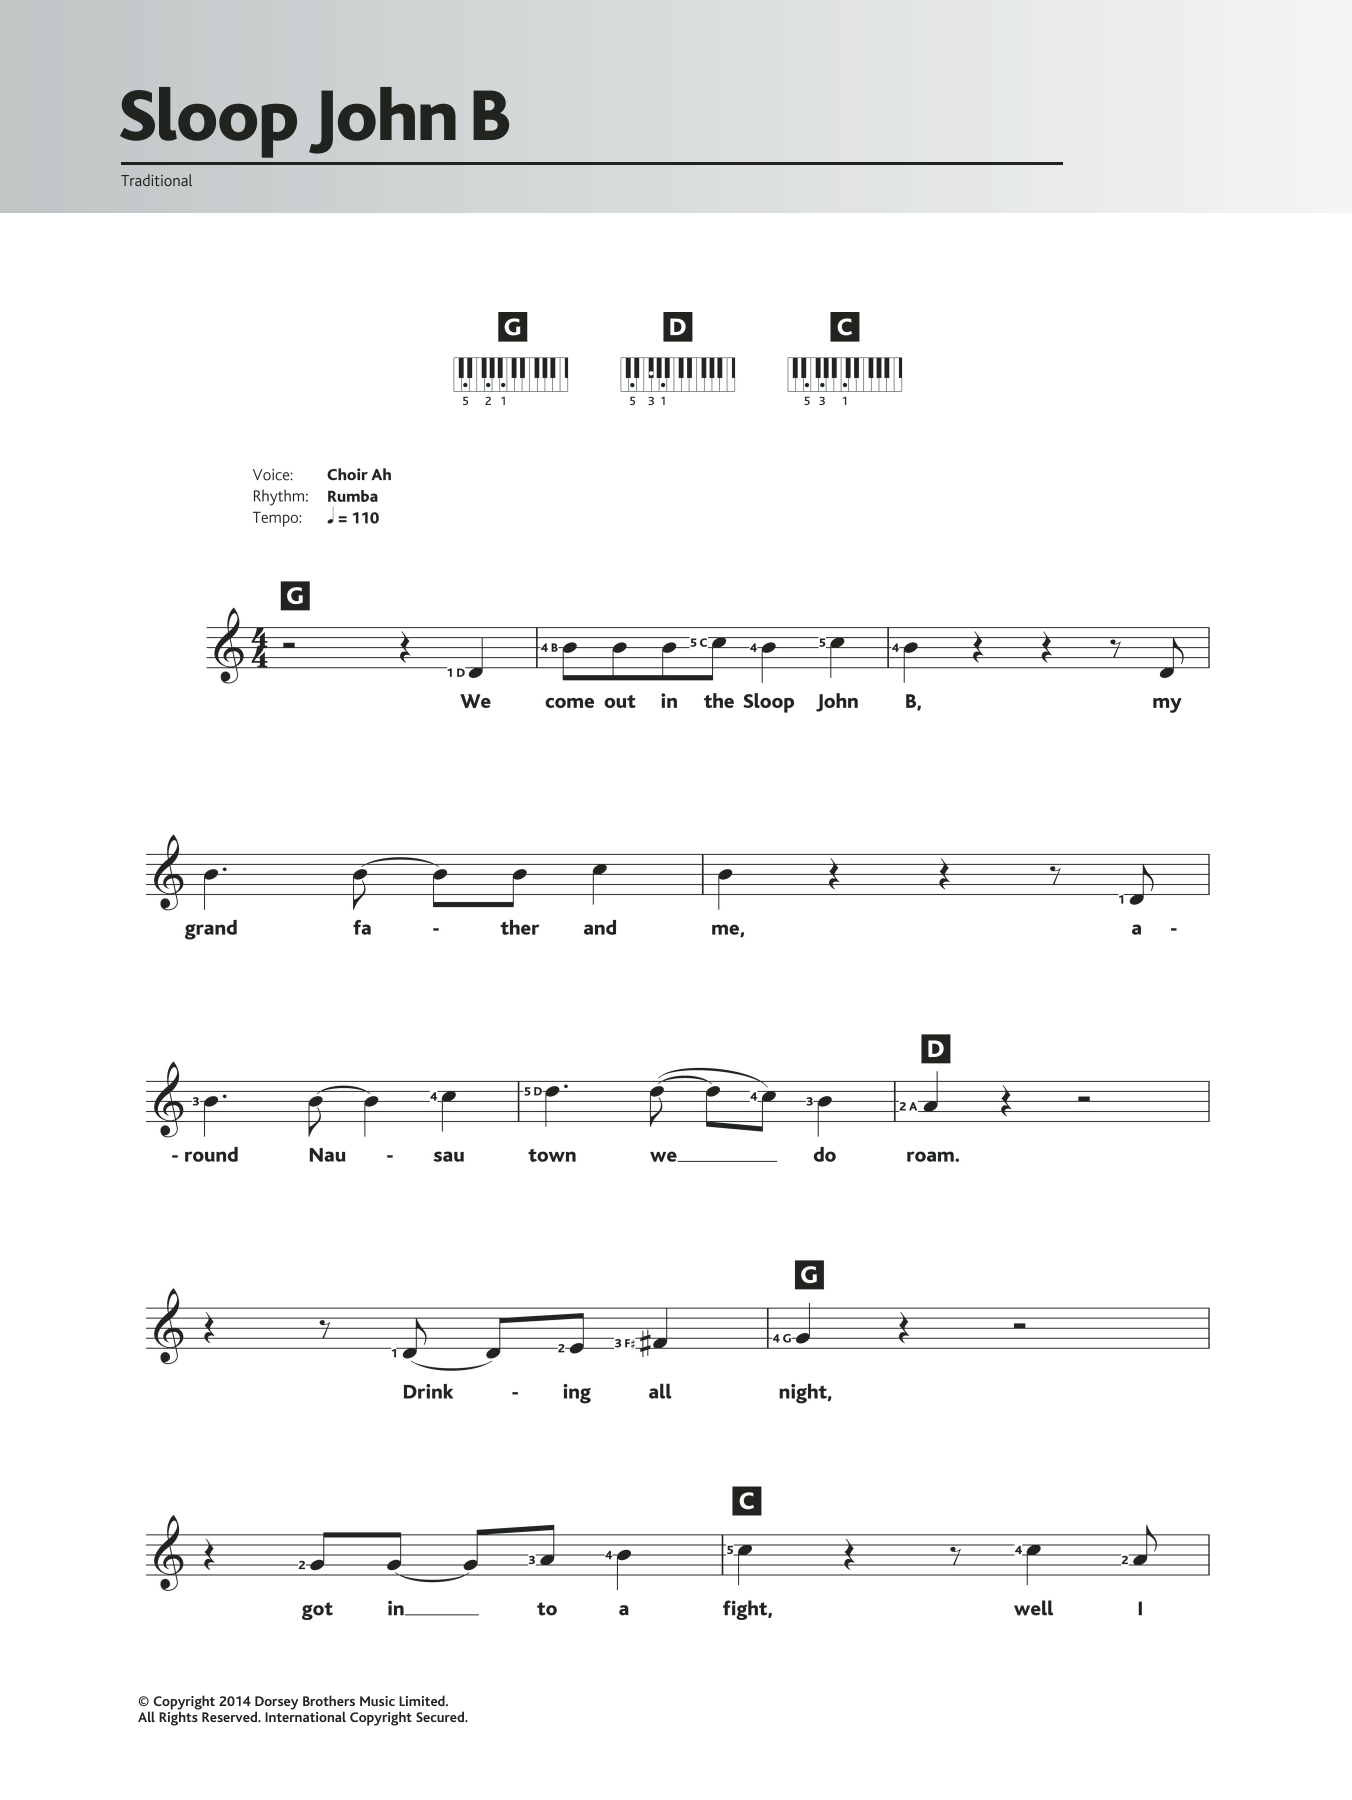 Traditional Sloop John B. sheet music notes and chords arranged for Ukulele Chords/Lyrics